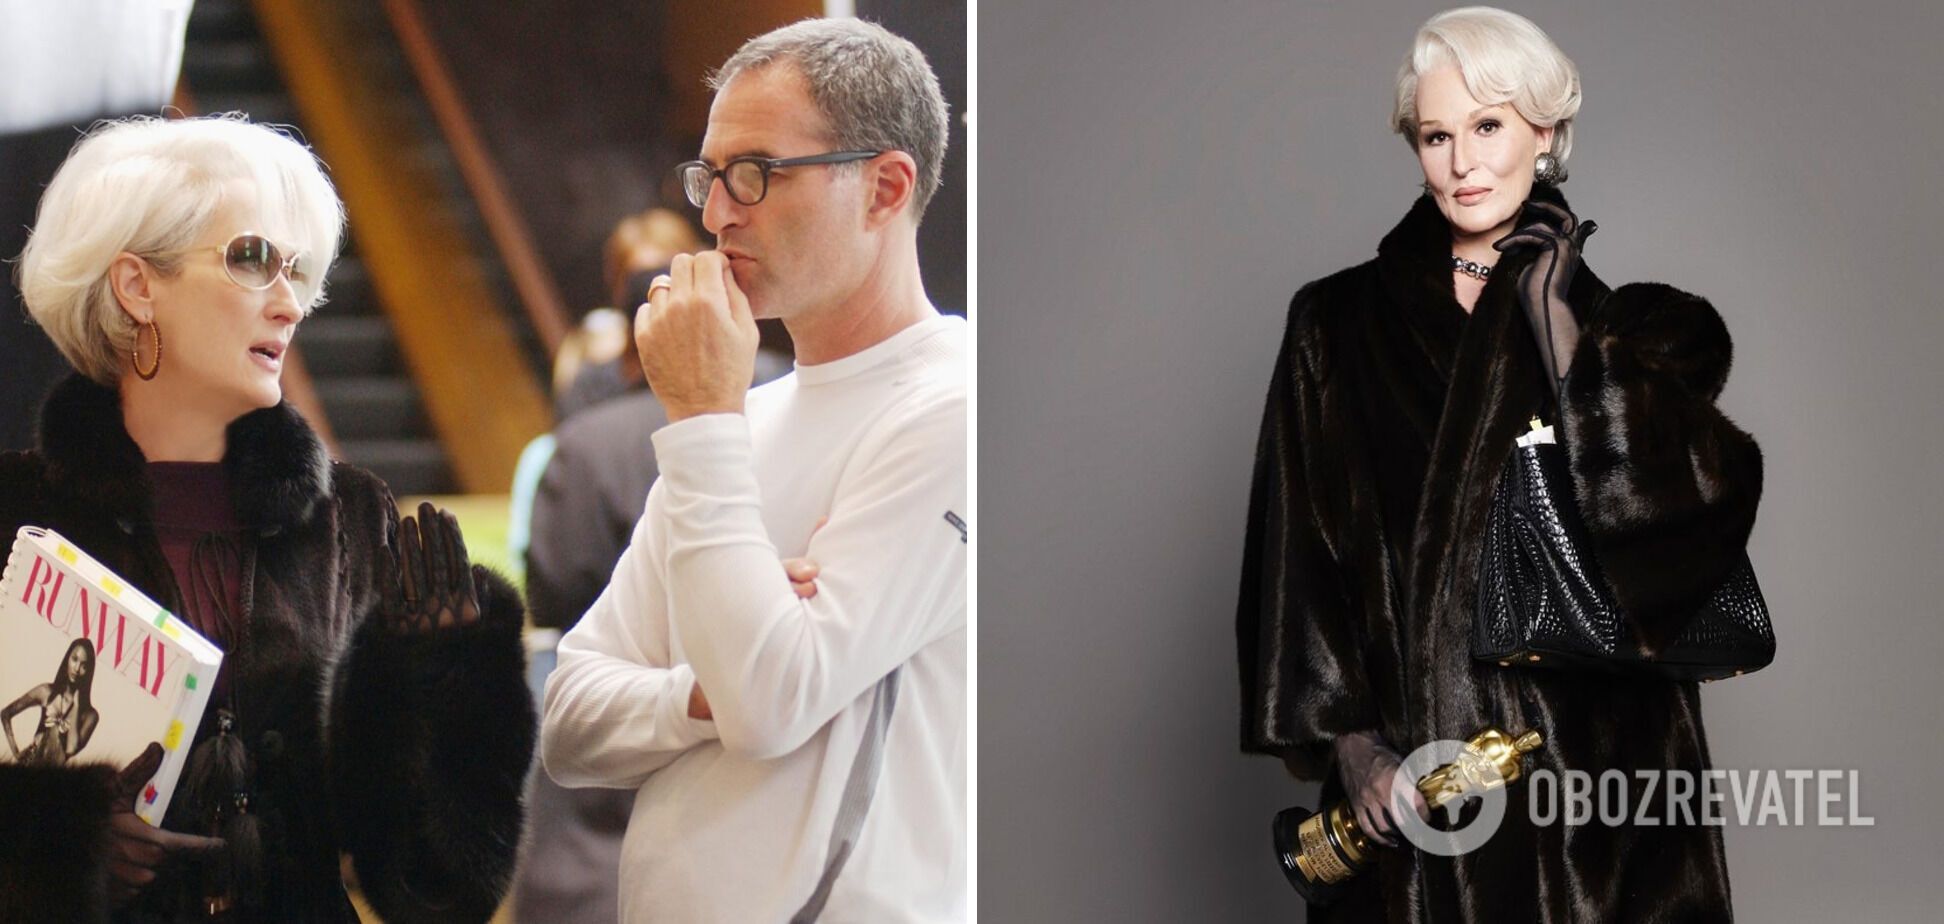 The Devil Wears Prada reborn: słynny wizażysta zamienia się w Meryl Streep na Paris Fashion Week, wyglądając zaskakująco podobnie